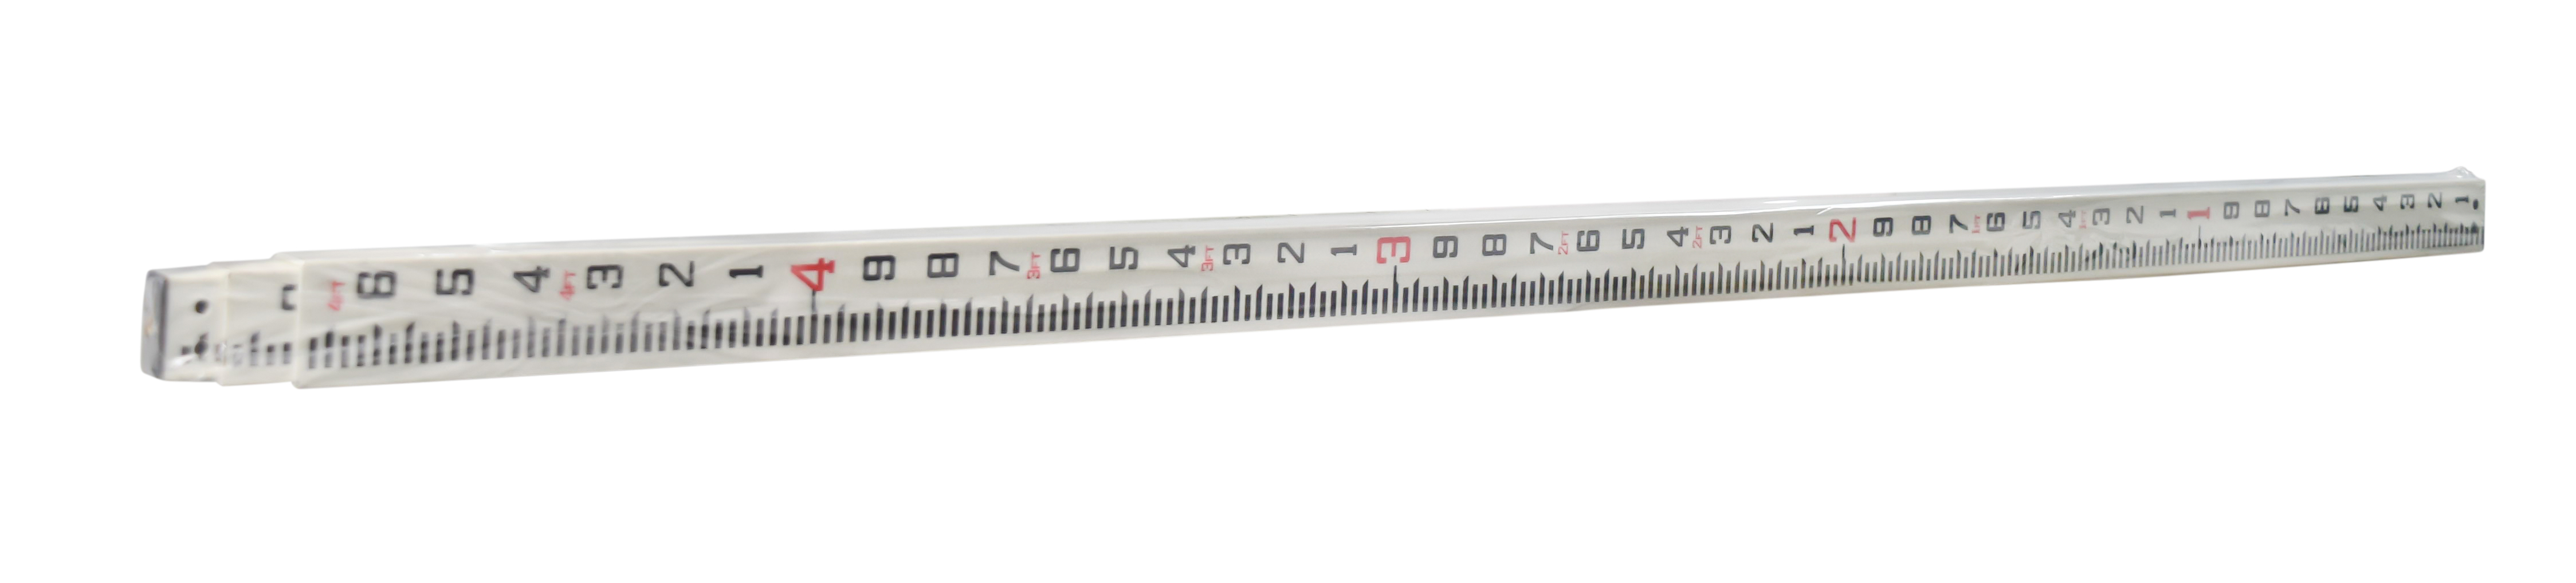 Sokkia Heavy Duty 13ft Tenths Fiberglass Grade Leveling Rod (1005150-01)